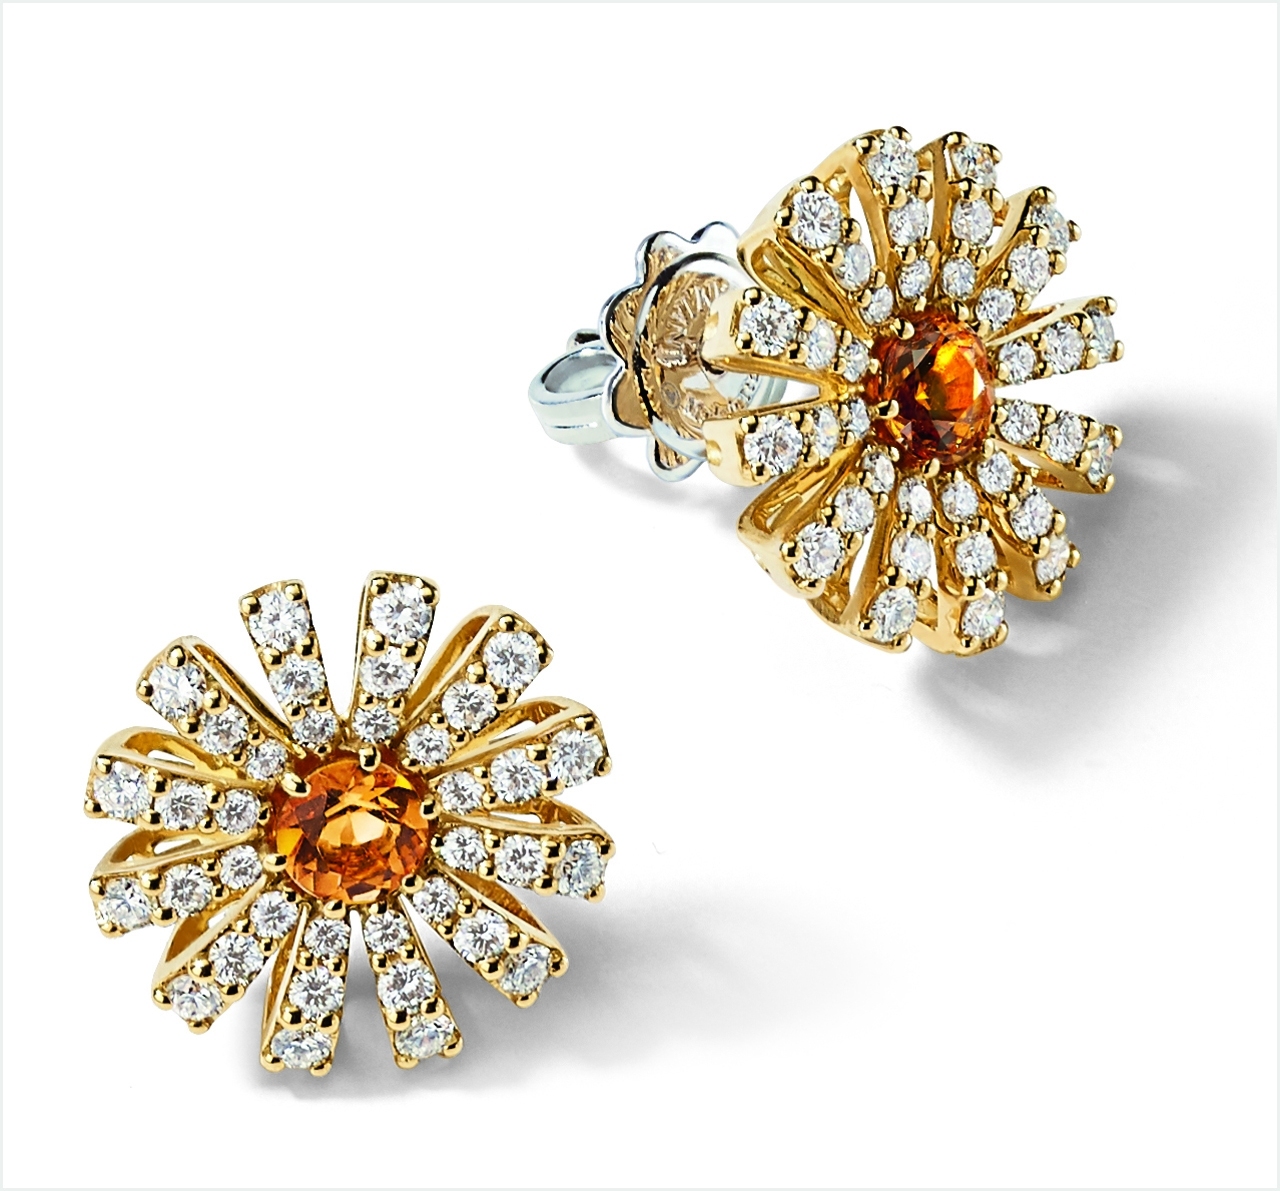 사진 : 다미아니, 다미아몬드와 시트린. Margherita earrings in yellow gold, diamonds and citrine quartz